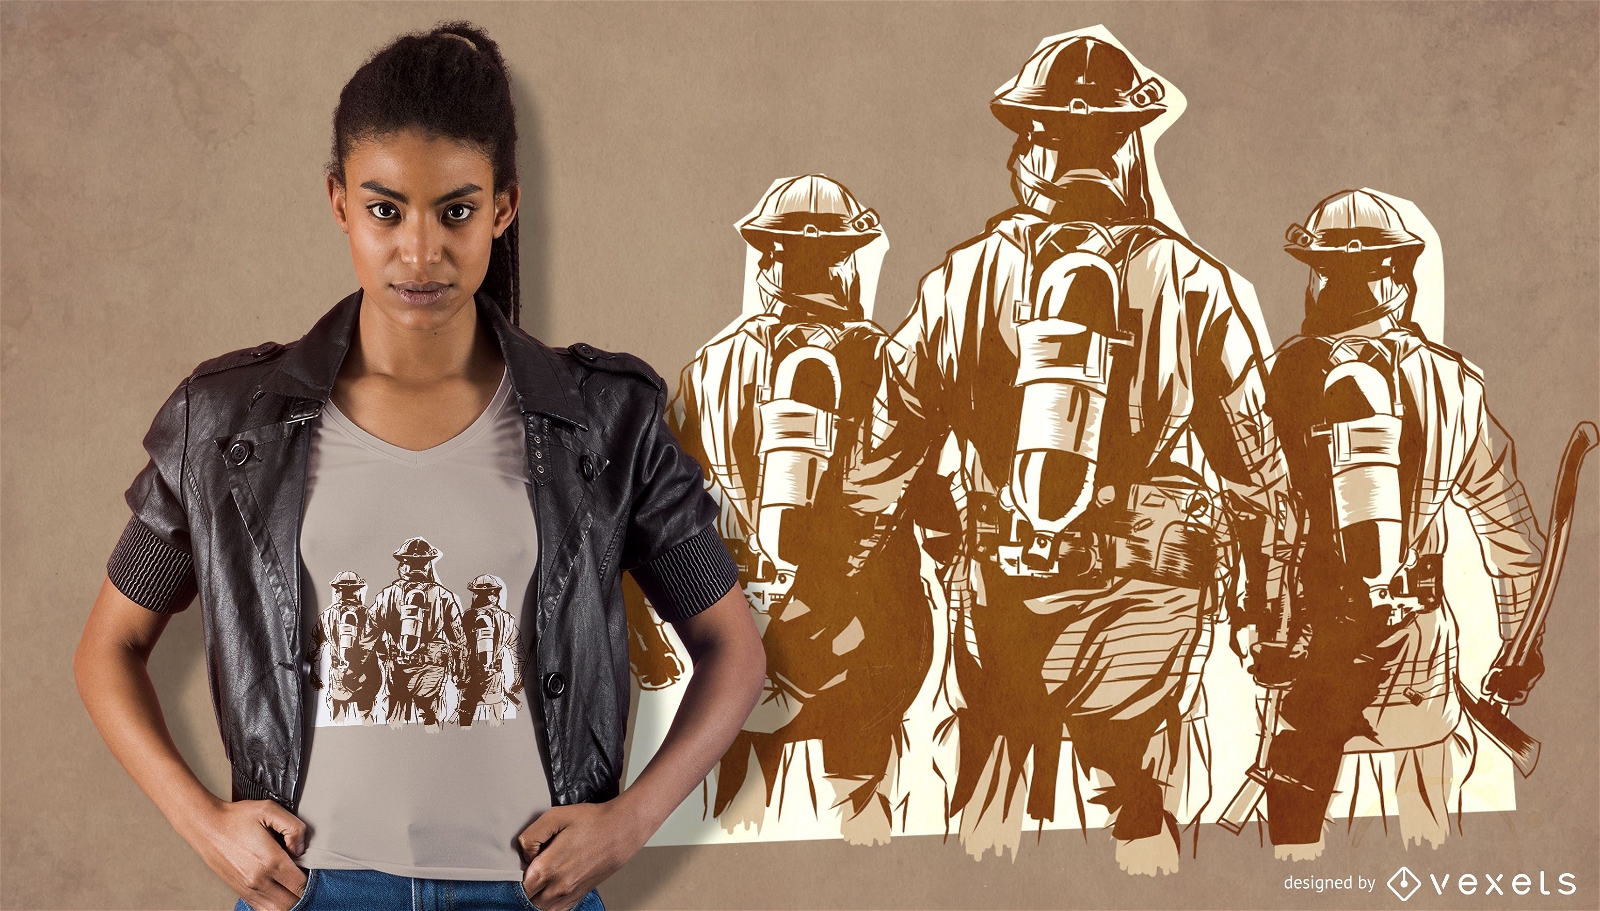 Firefighter Team T-shirt Design